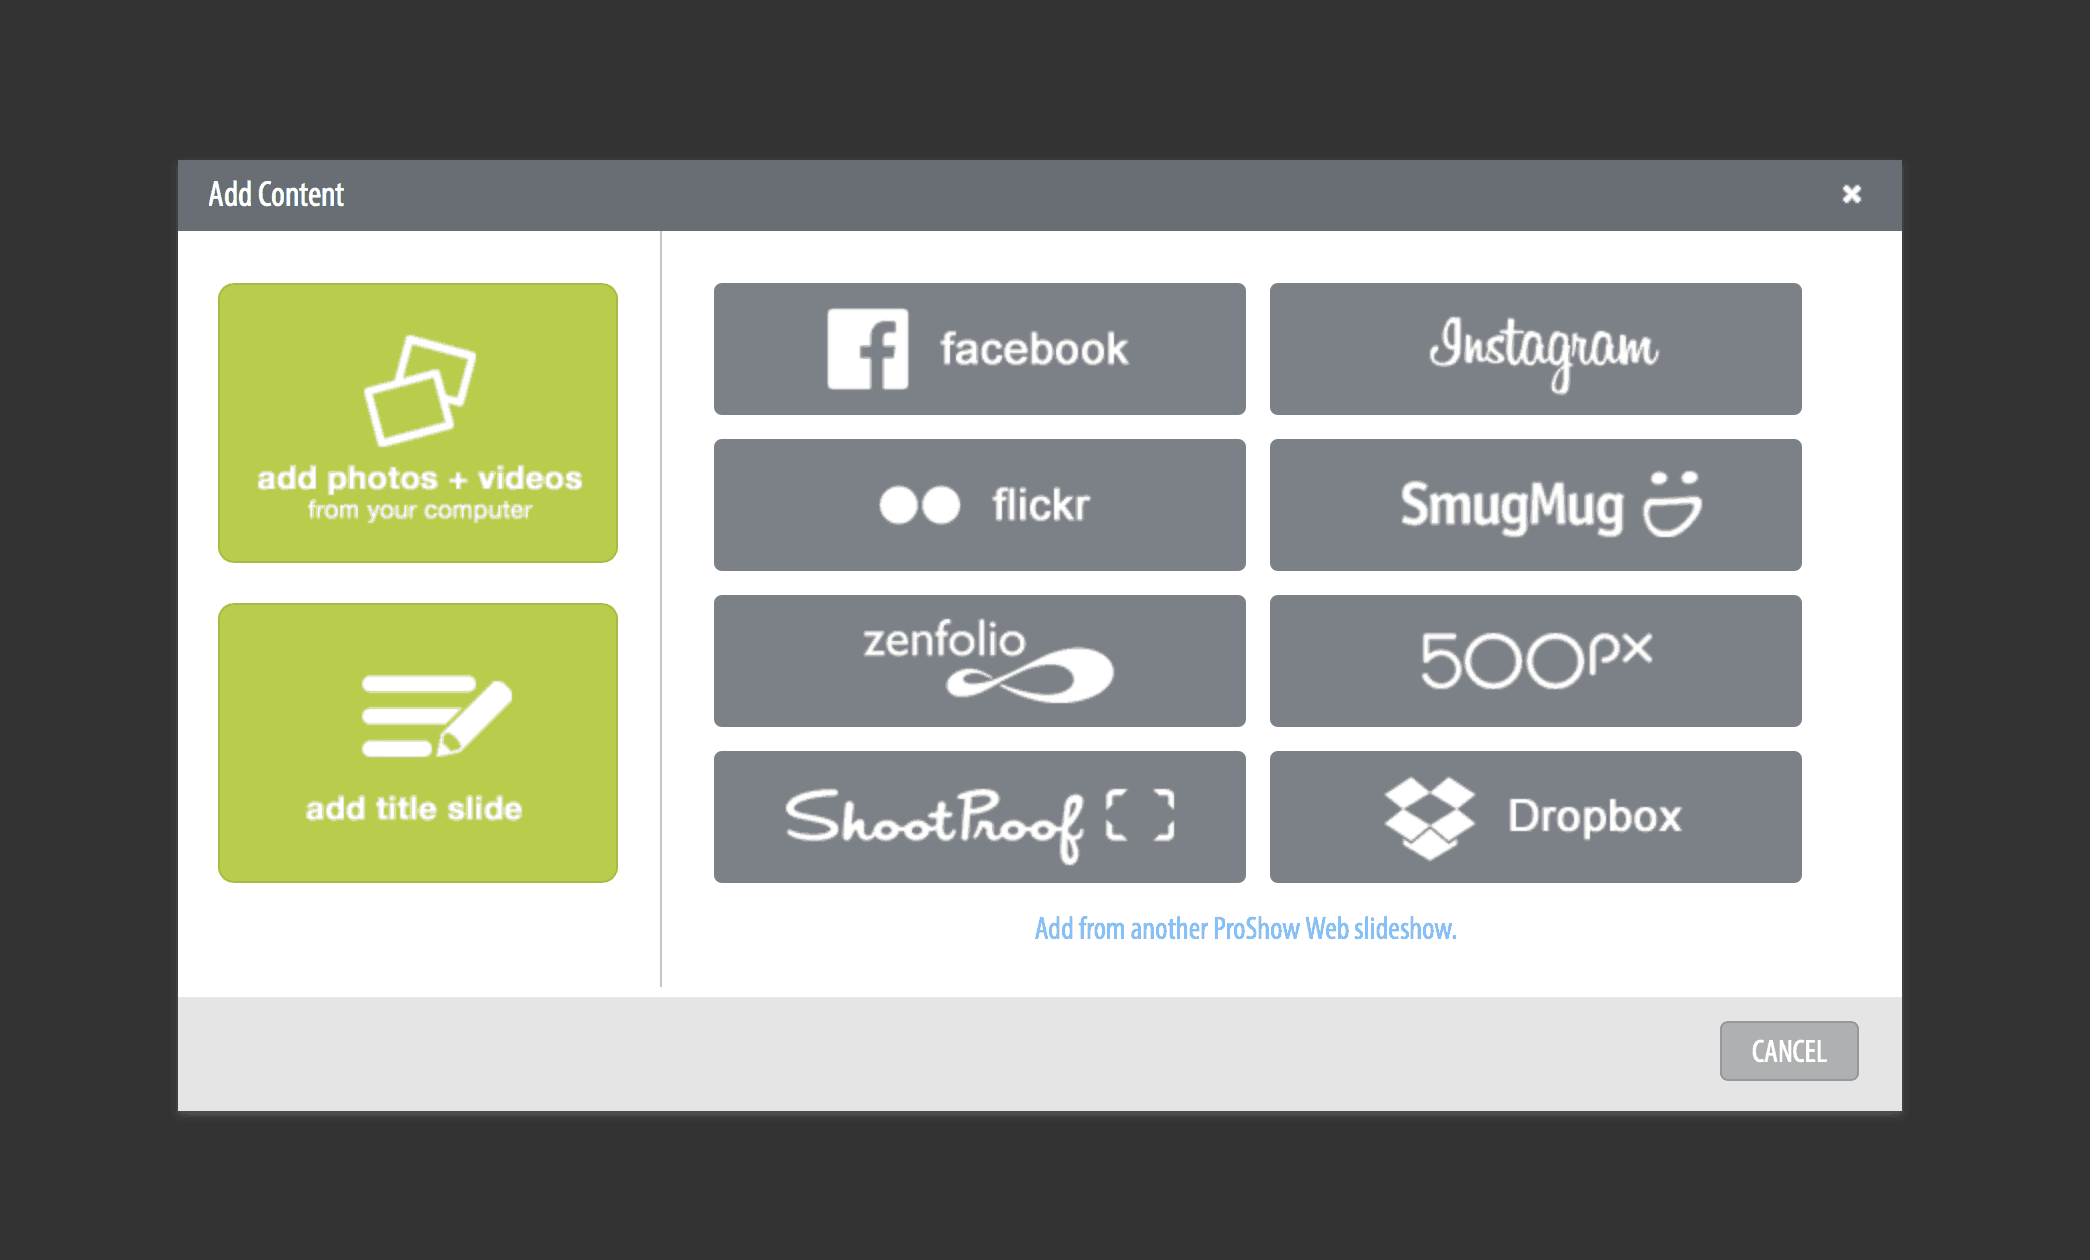 Cómo Crear una Presentación de Fotos y videos Como un Profesional con ProShow Web | OrganizingPhotos.net Instagram Facebook, Flickr, Zenfolio, Dropbox, etc. Puedes añadir contenido de varias fuentes, como Facebook, Flickr, Instagram, Zenfolio y Dropbox.